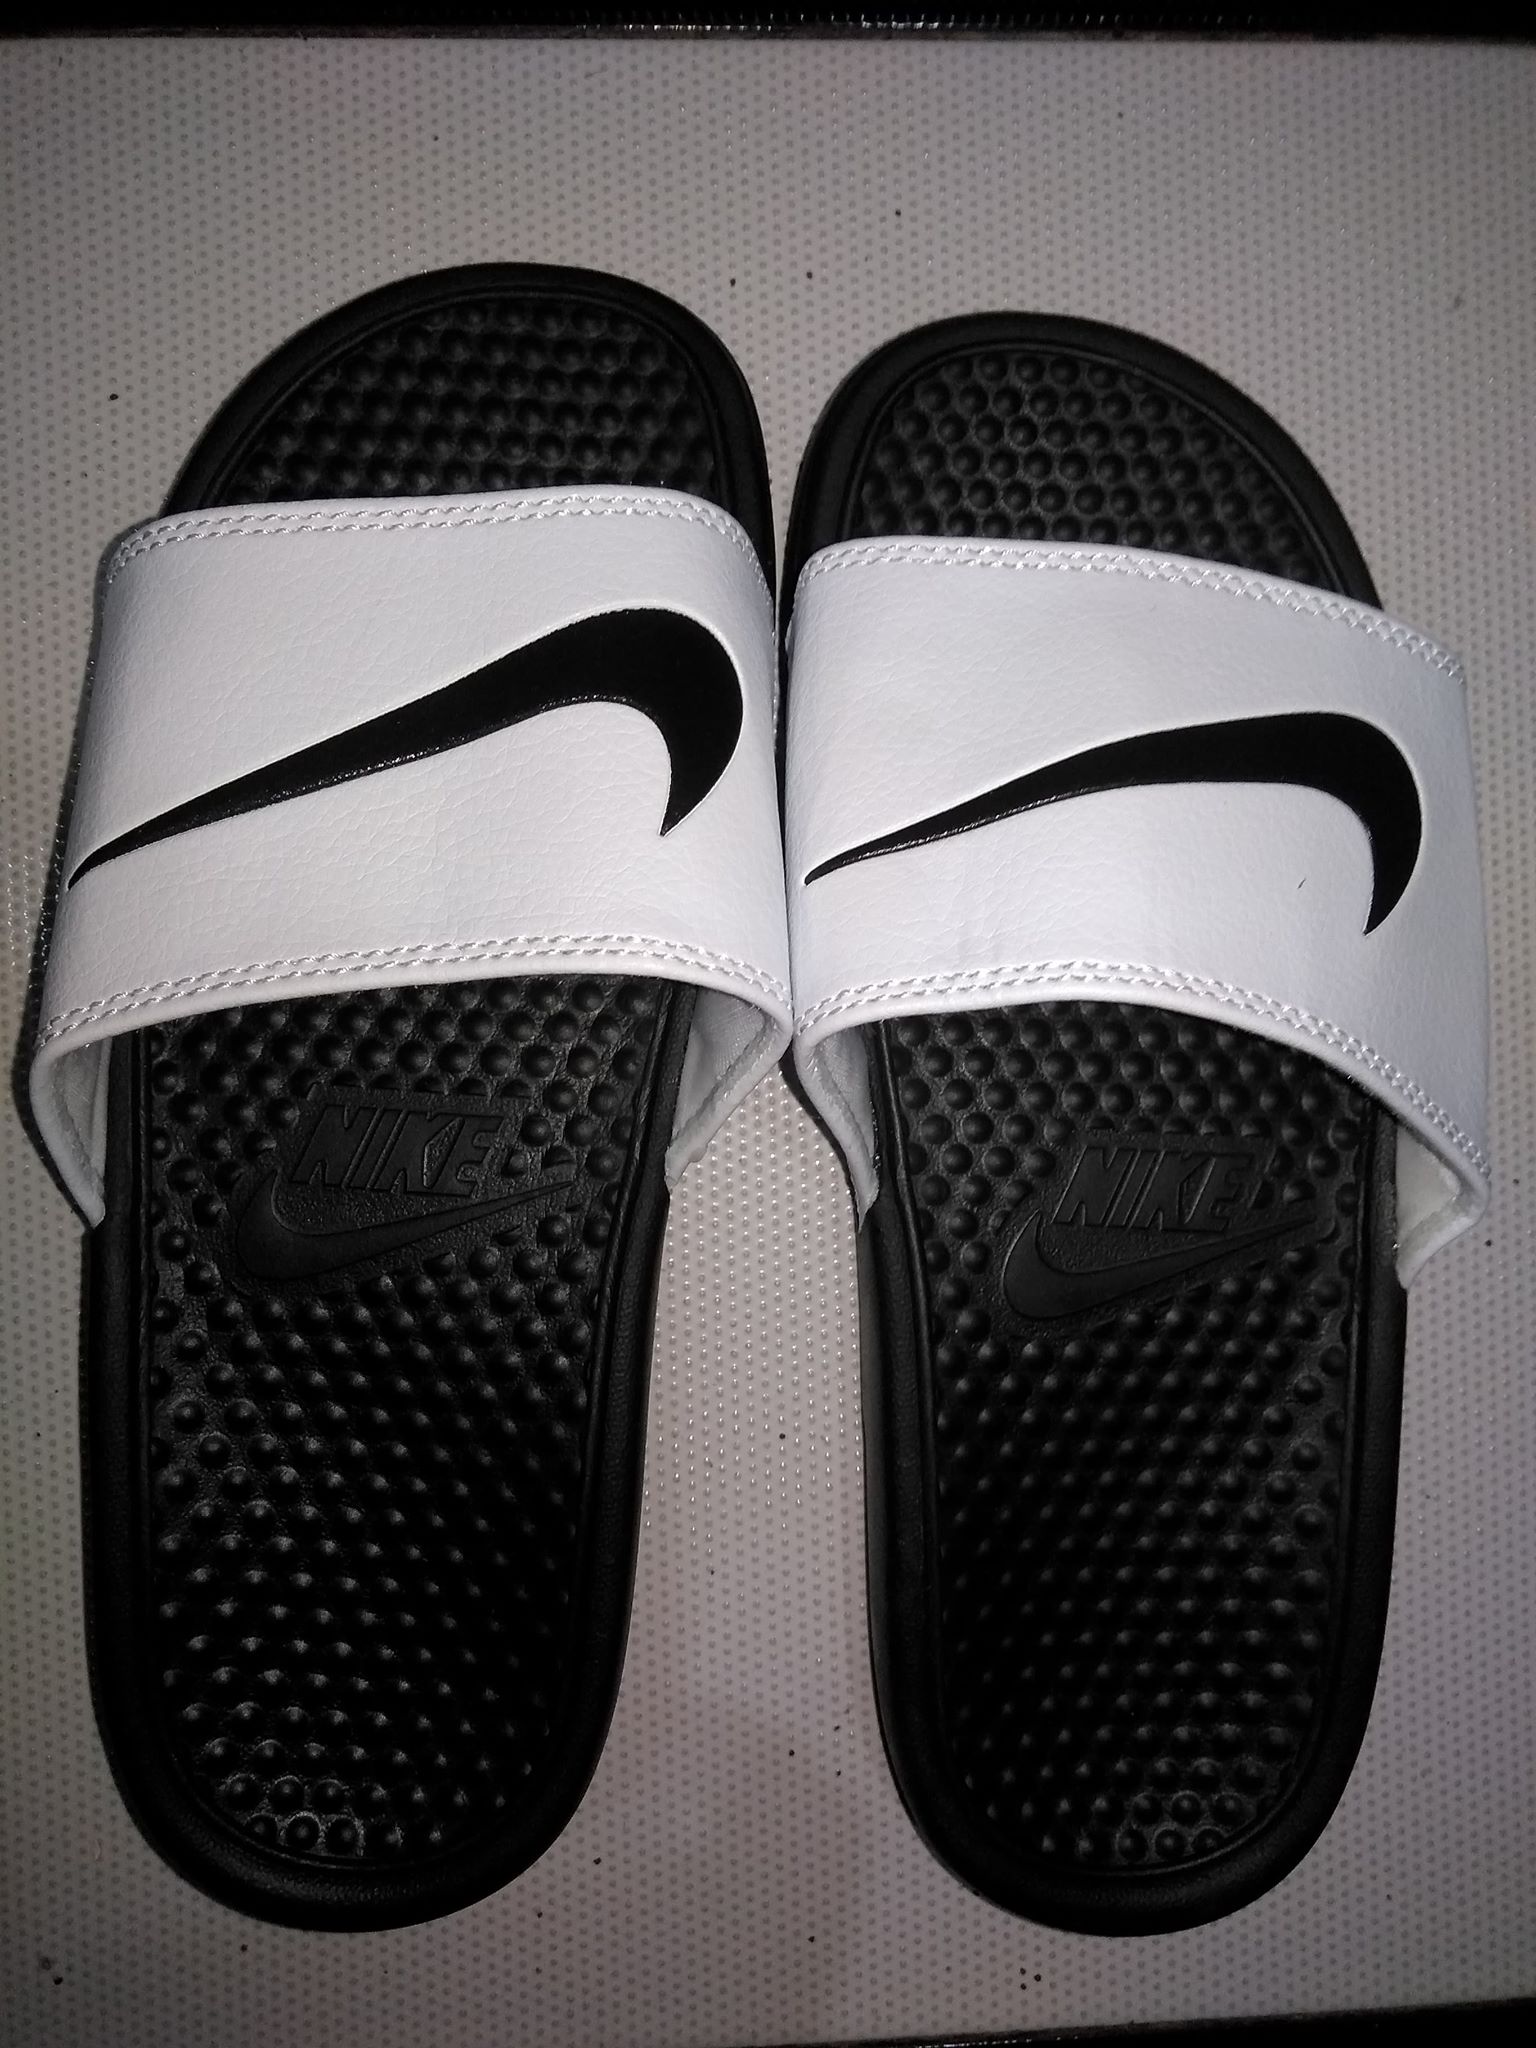 foot locker nike slippers